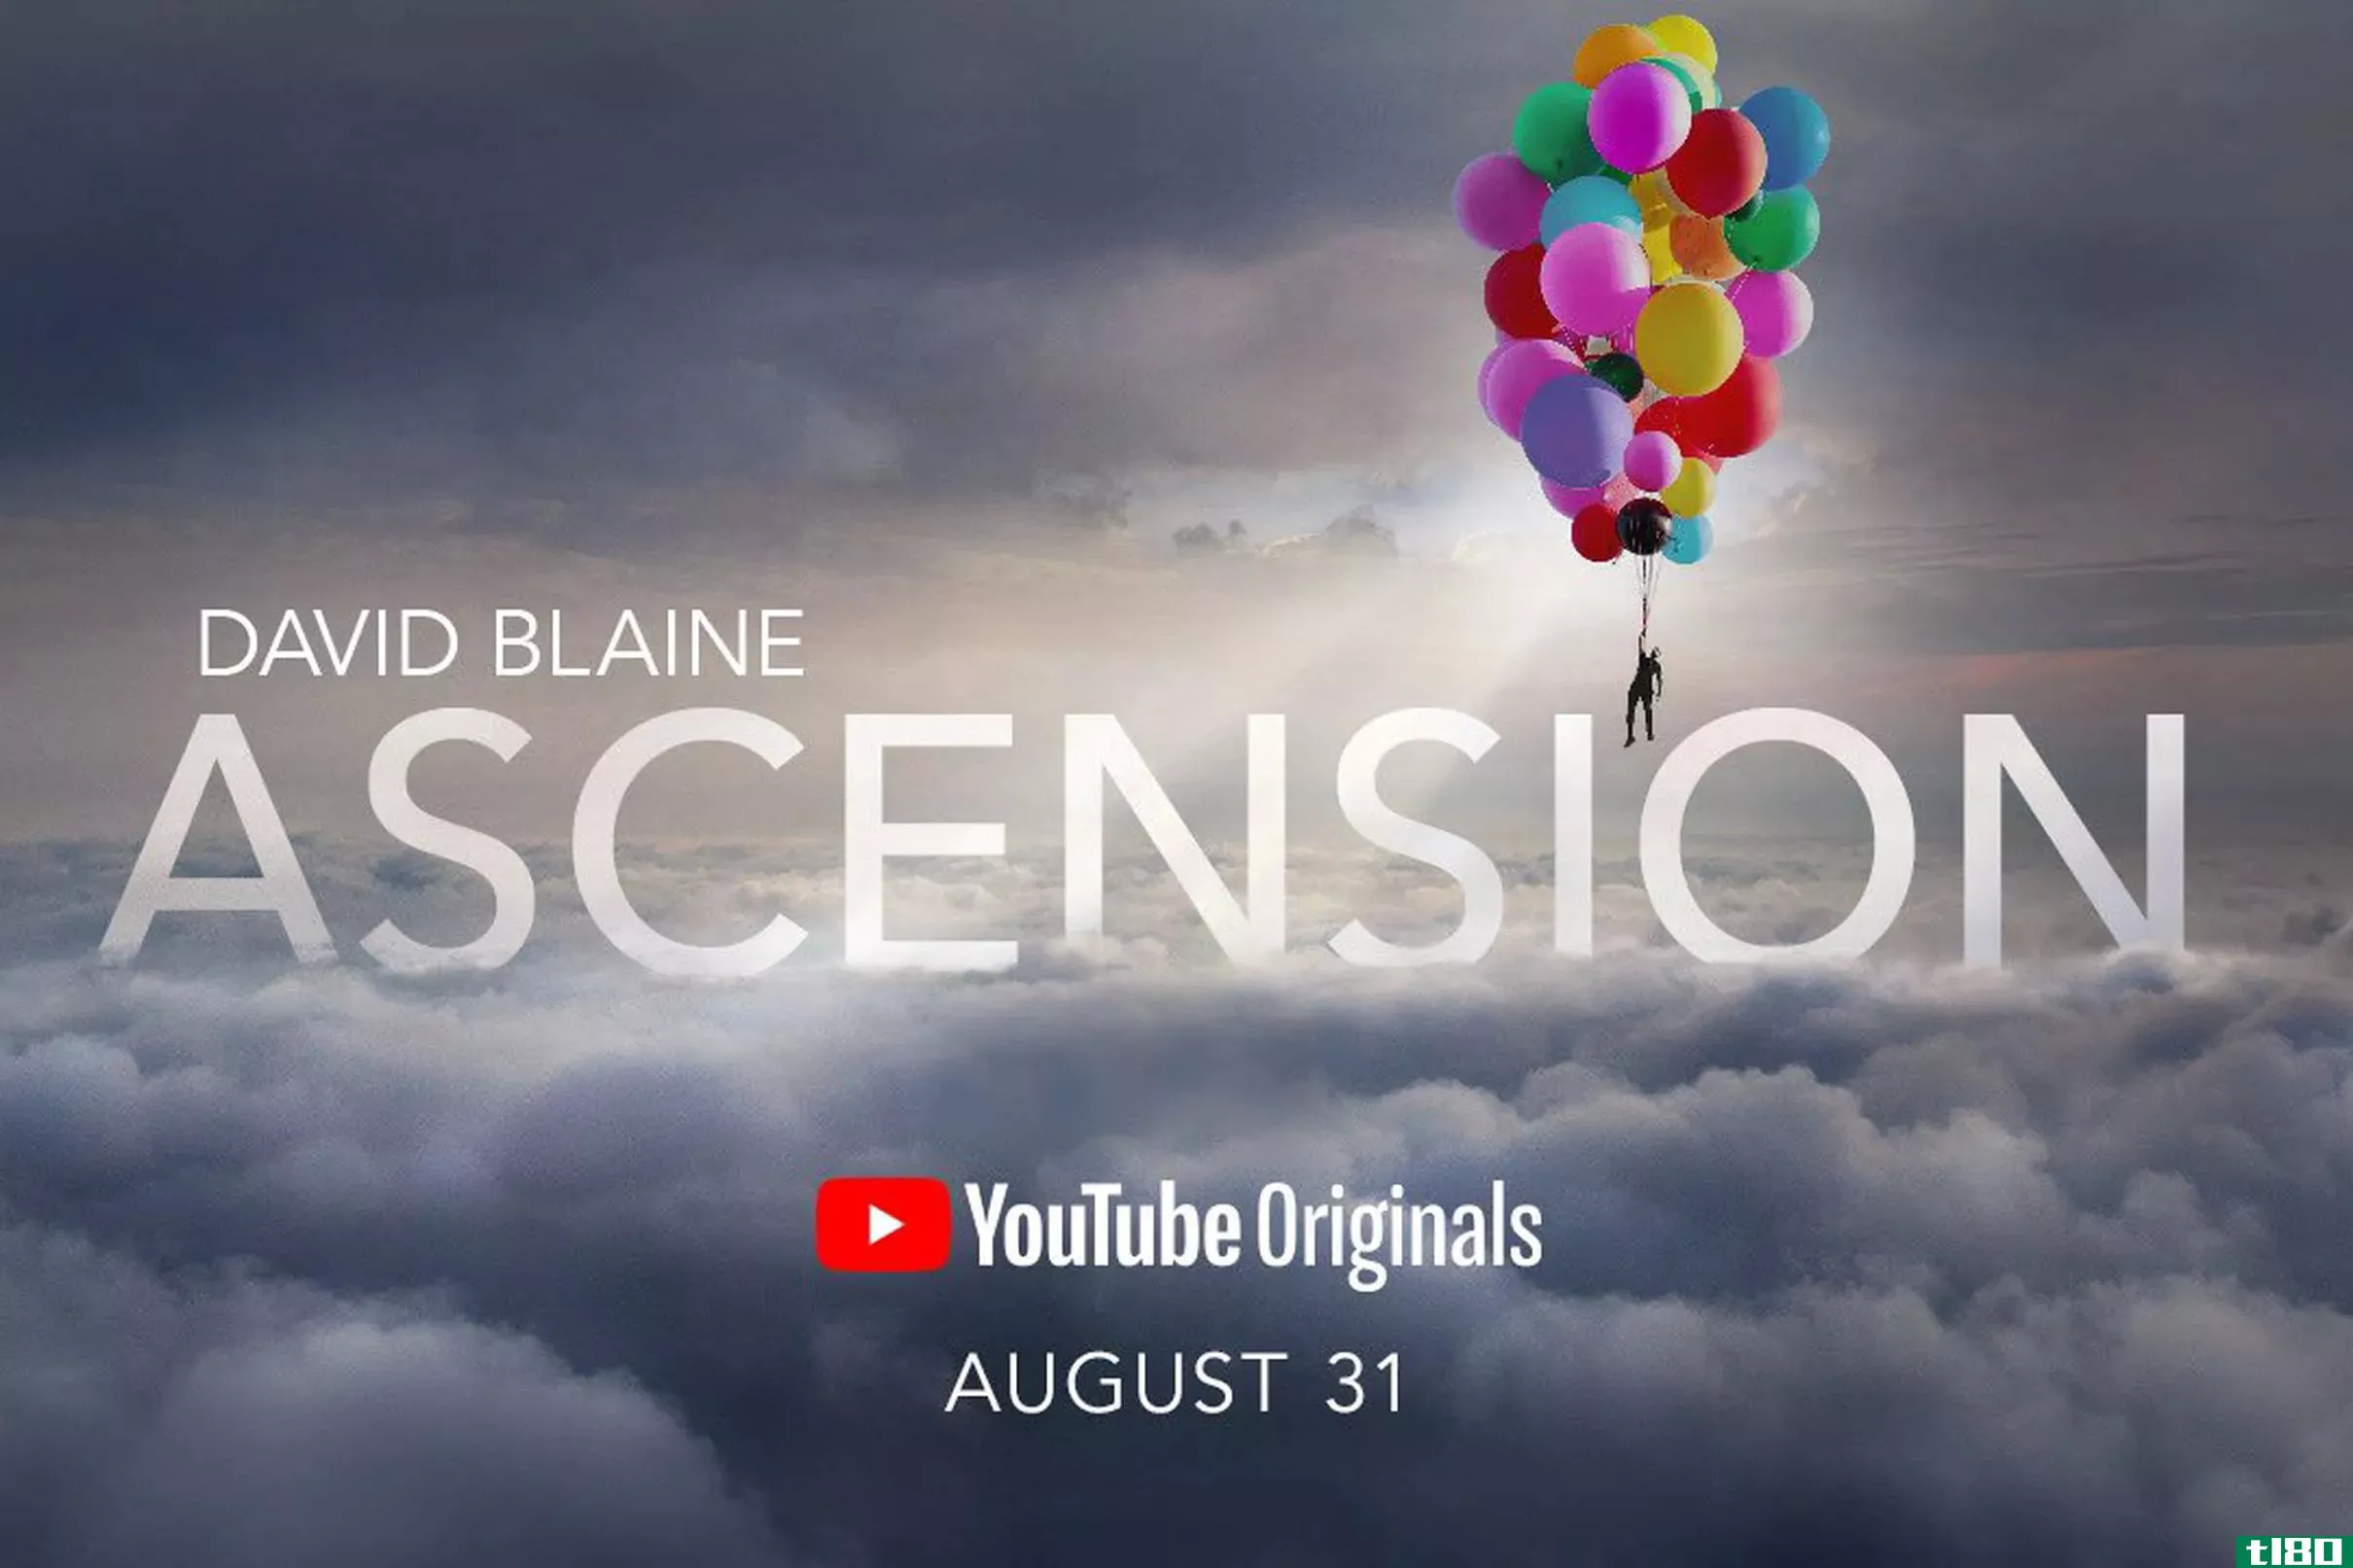 大卫·布莱恩的下一个大特技将是youtube的原创视频直播